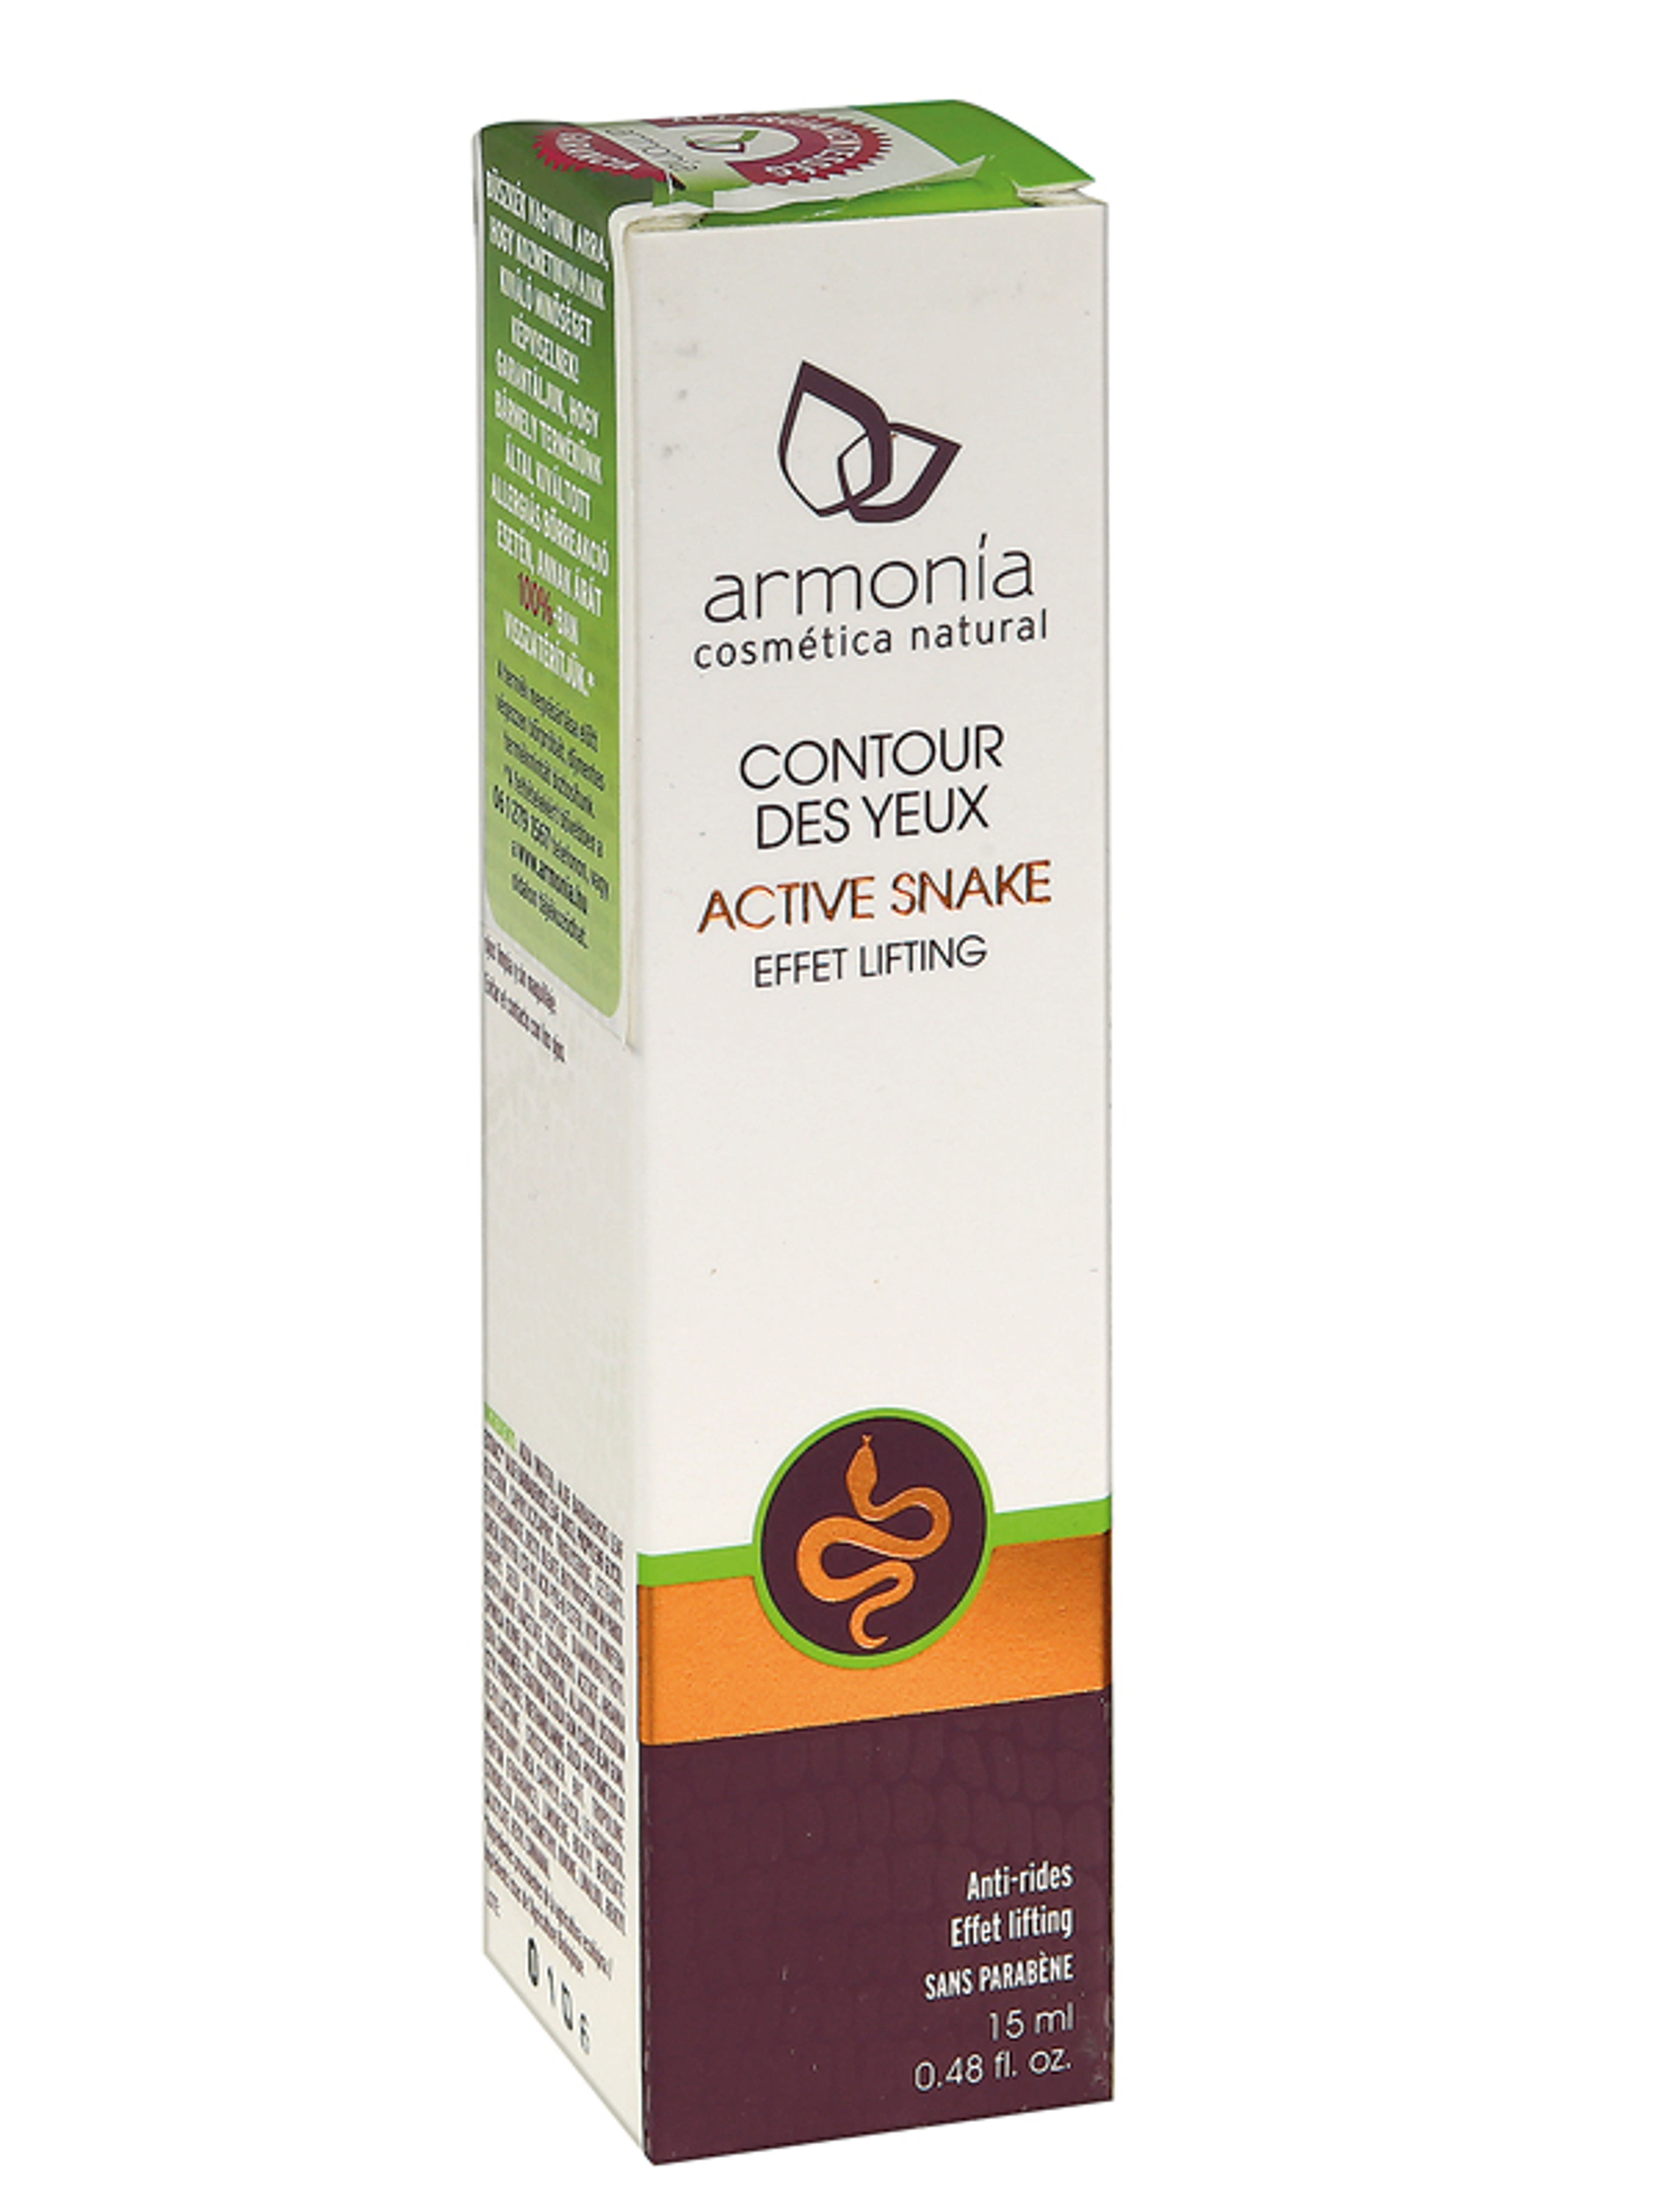 Armonia Active Snake kígyóméreg ránckisimító, lifting hatású szemránckrém - 15 ml